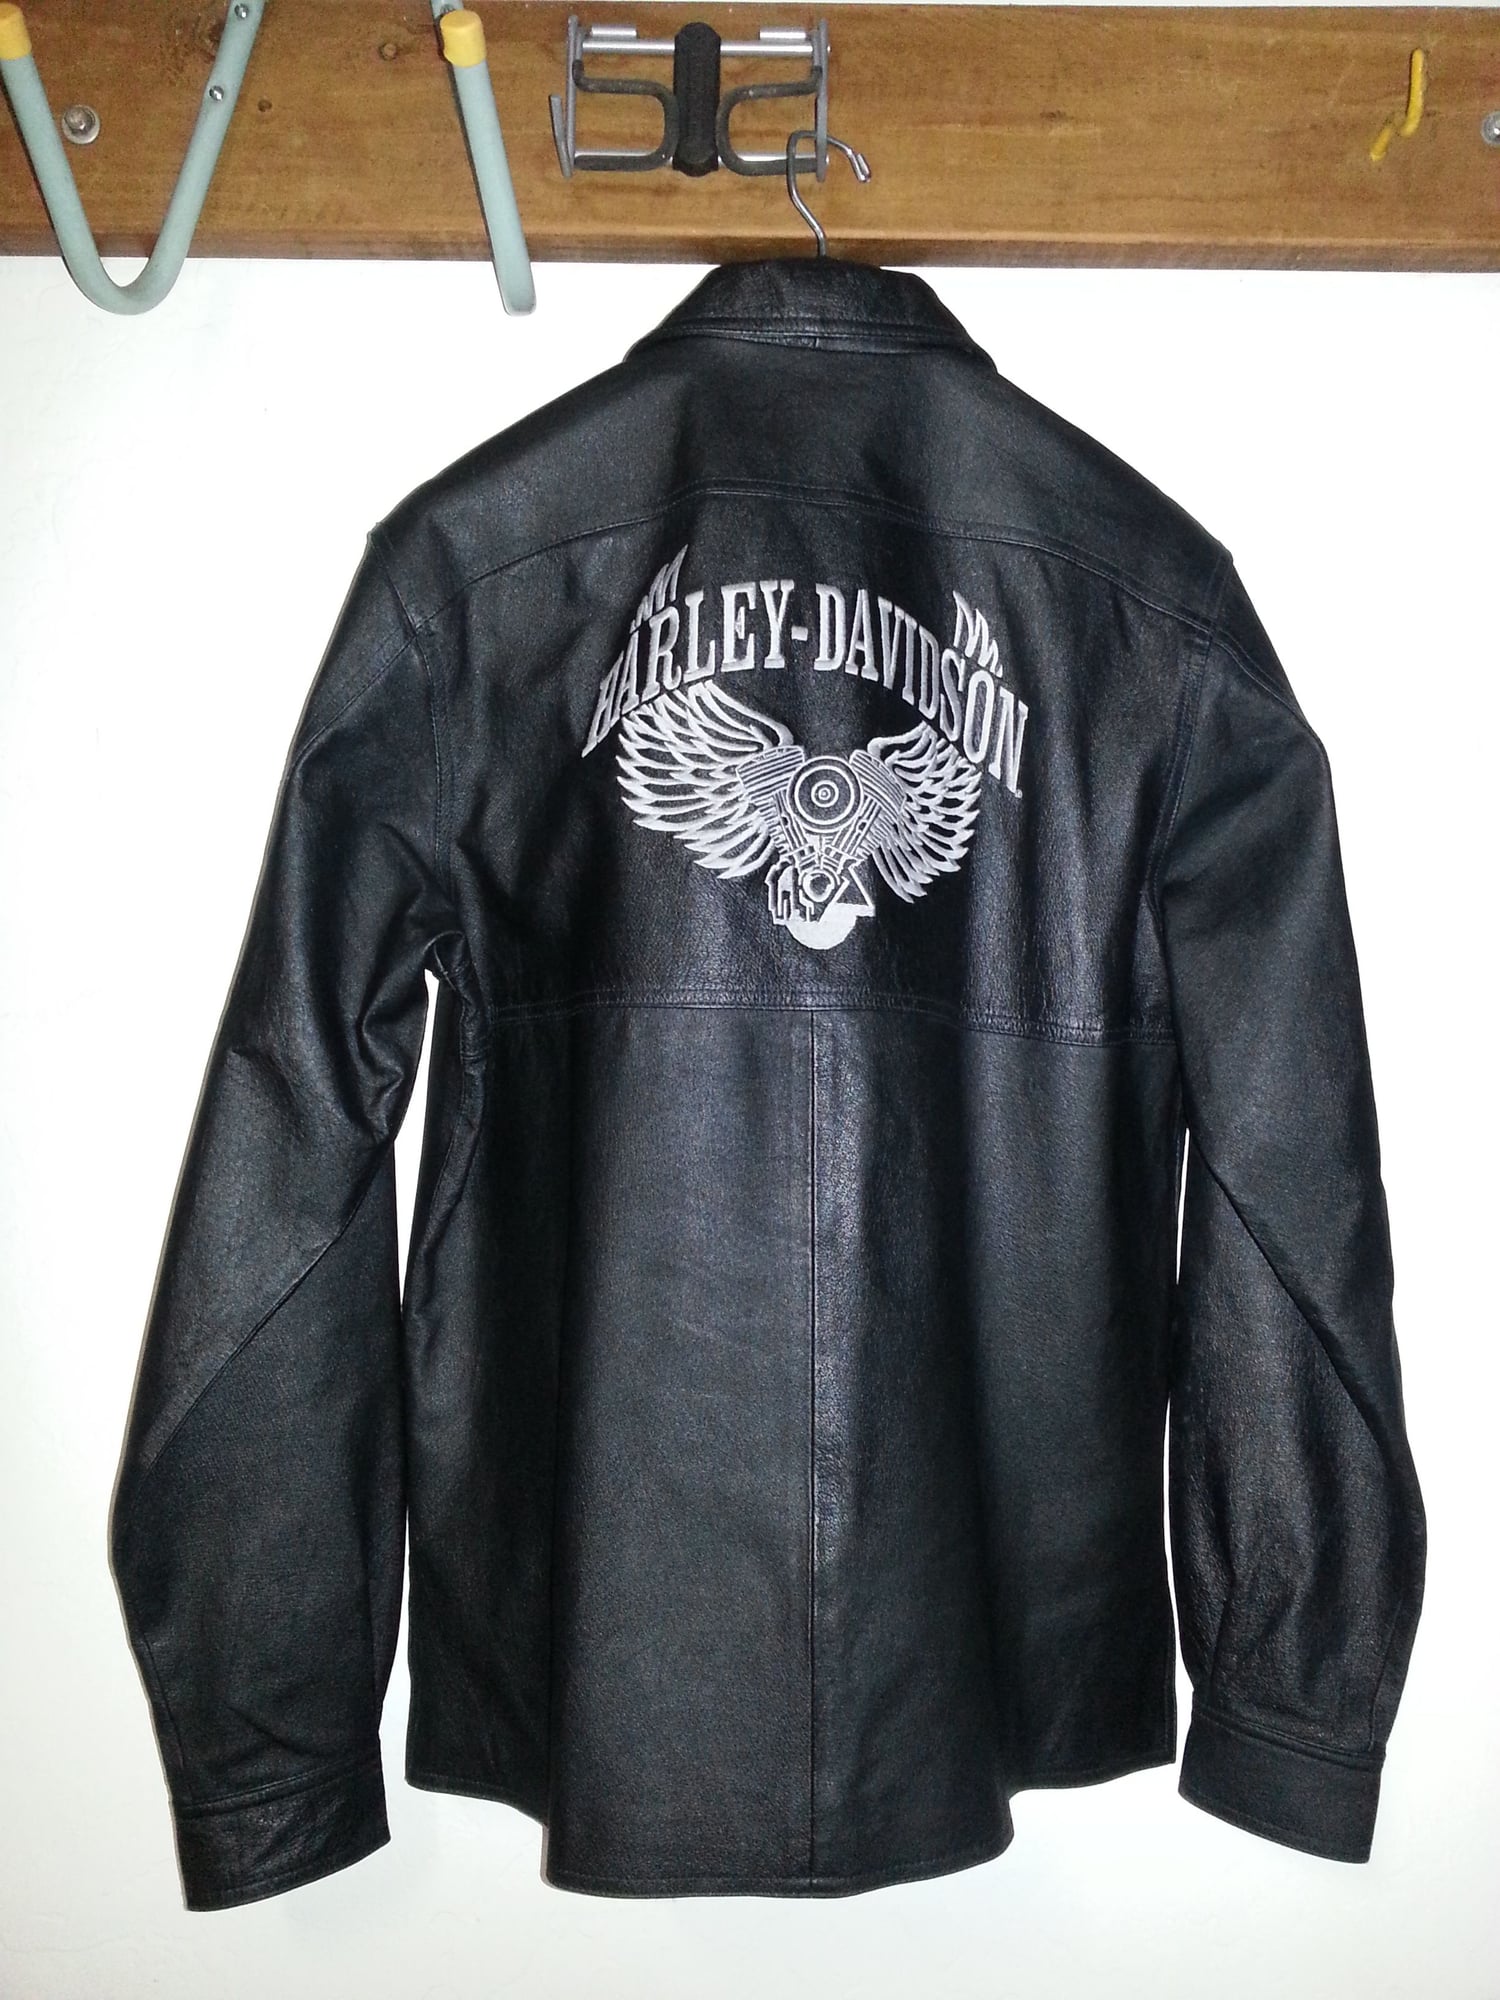 Harley Davidson Black Leather Riding Shirt, Embroidered back - Harley Davidson Forums